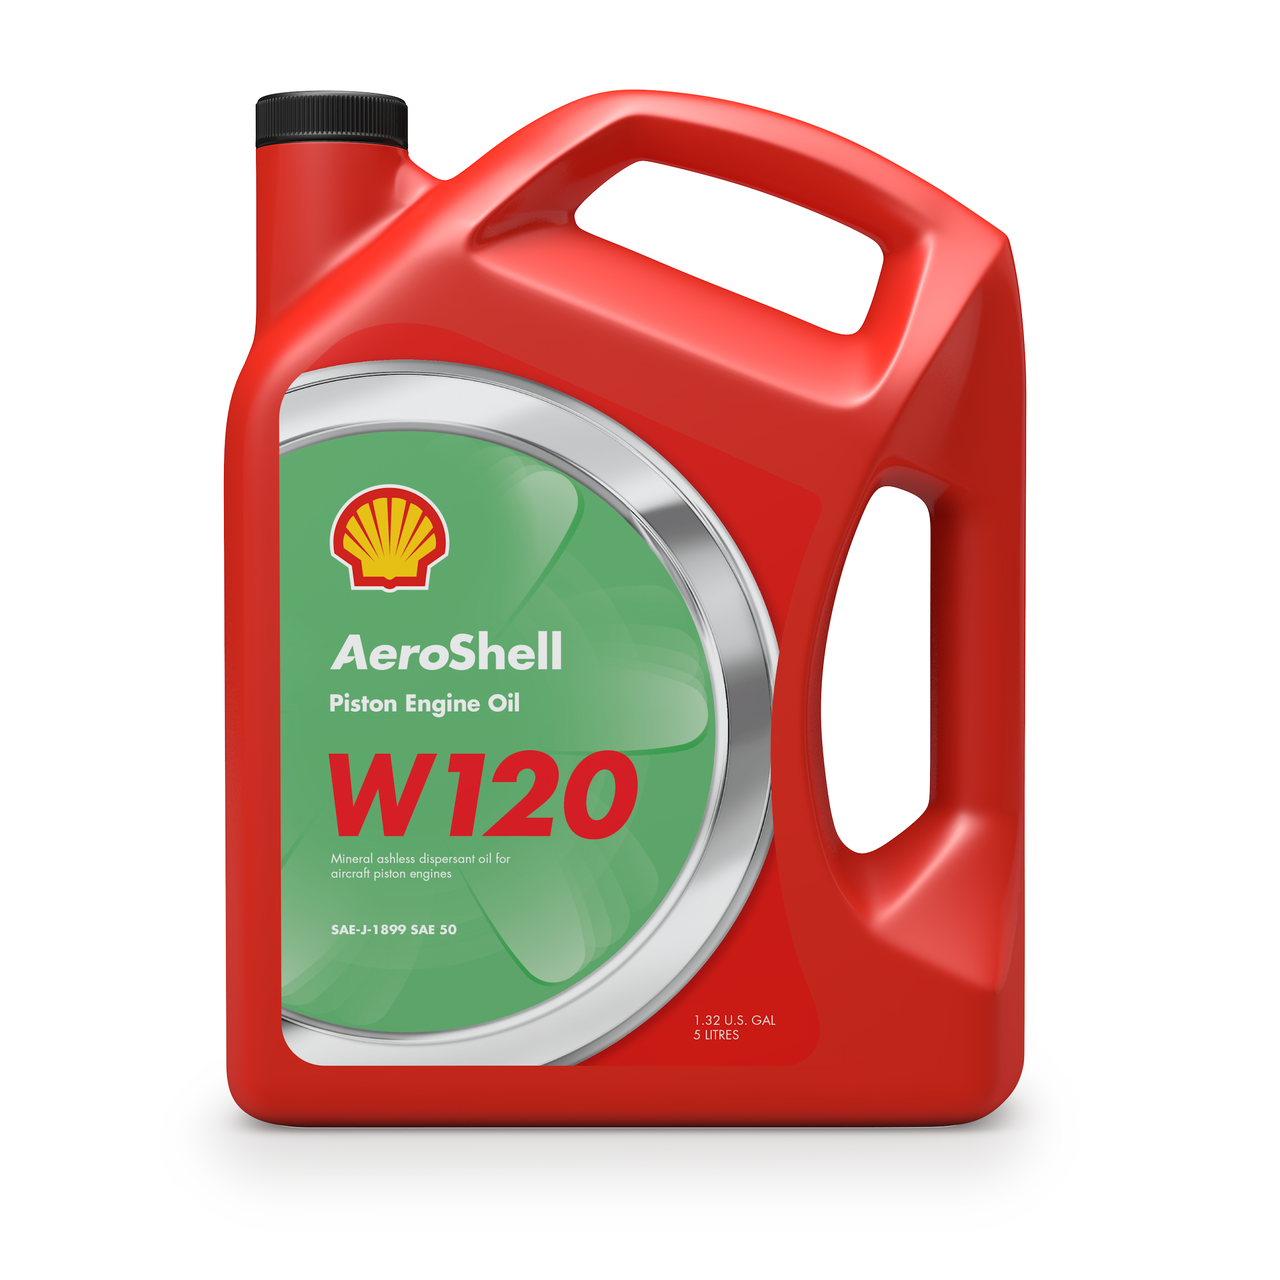 AeroShell W120 Oil (5 Liter / 1.32 Gallon Jug)